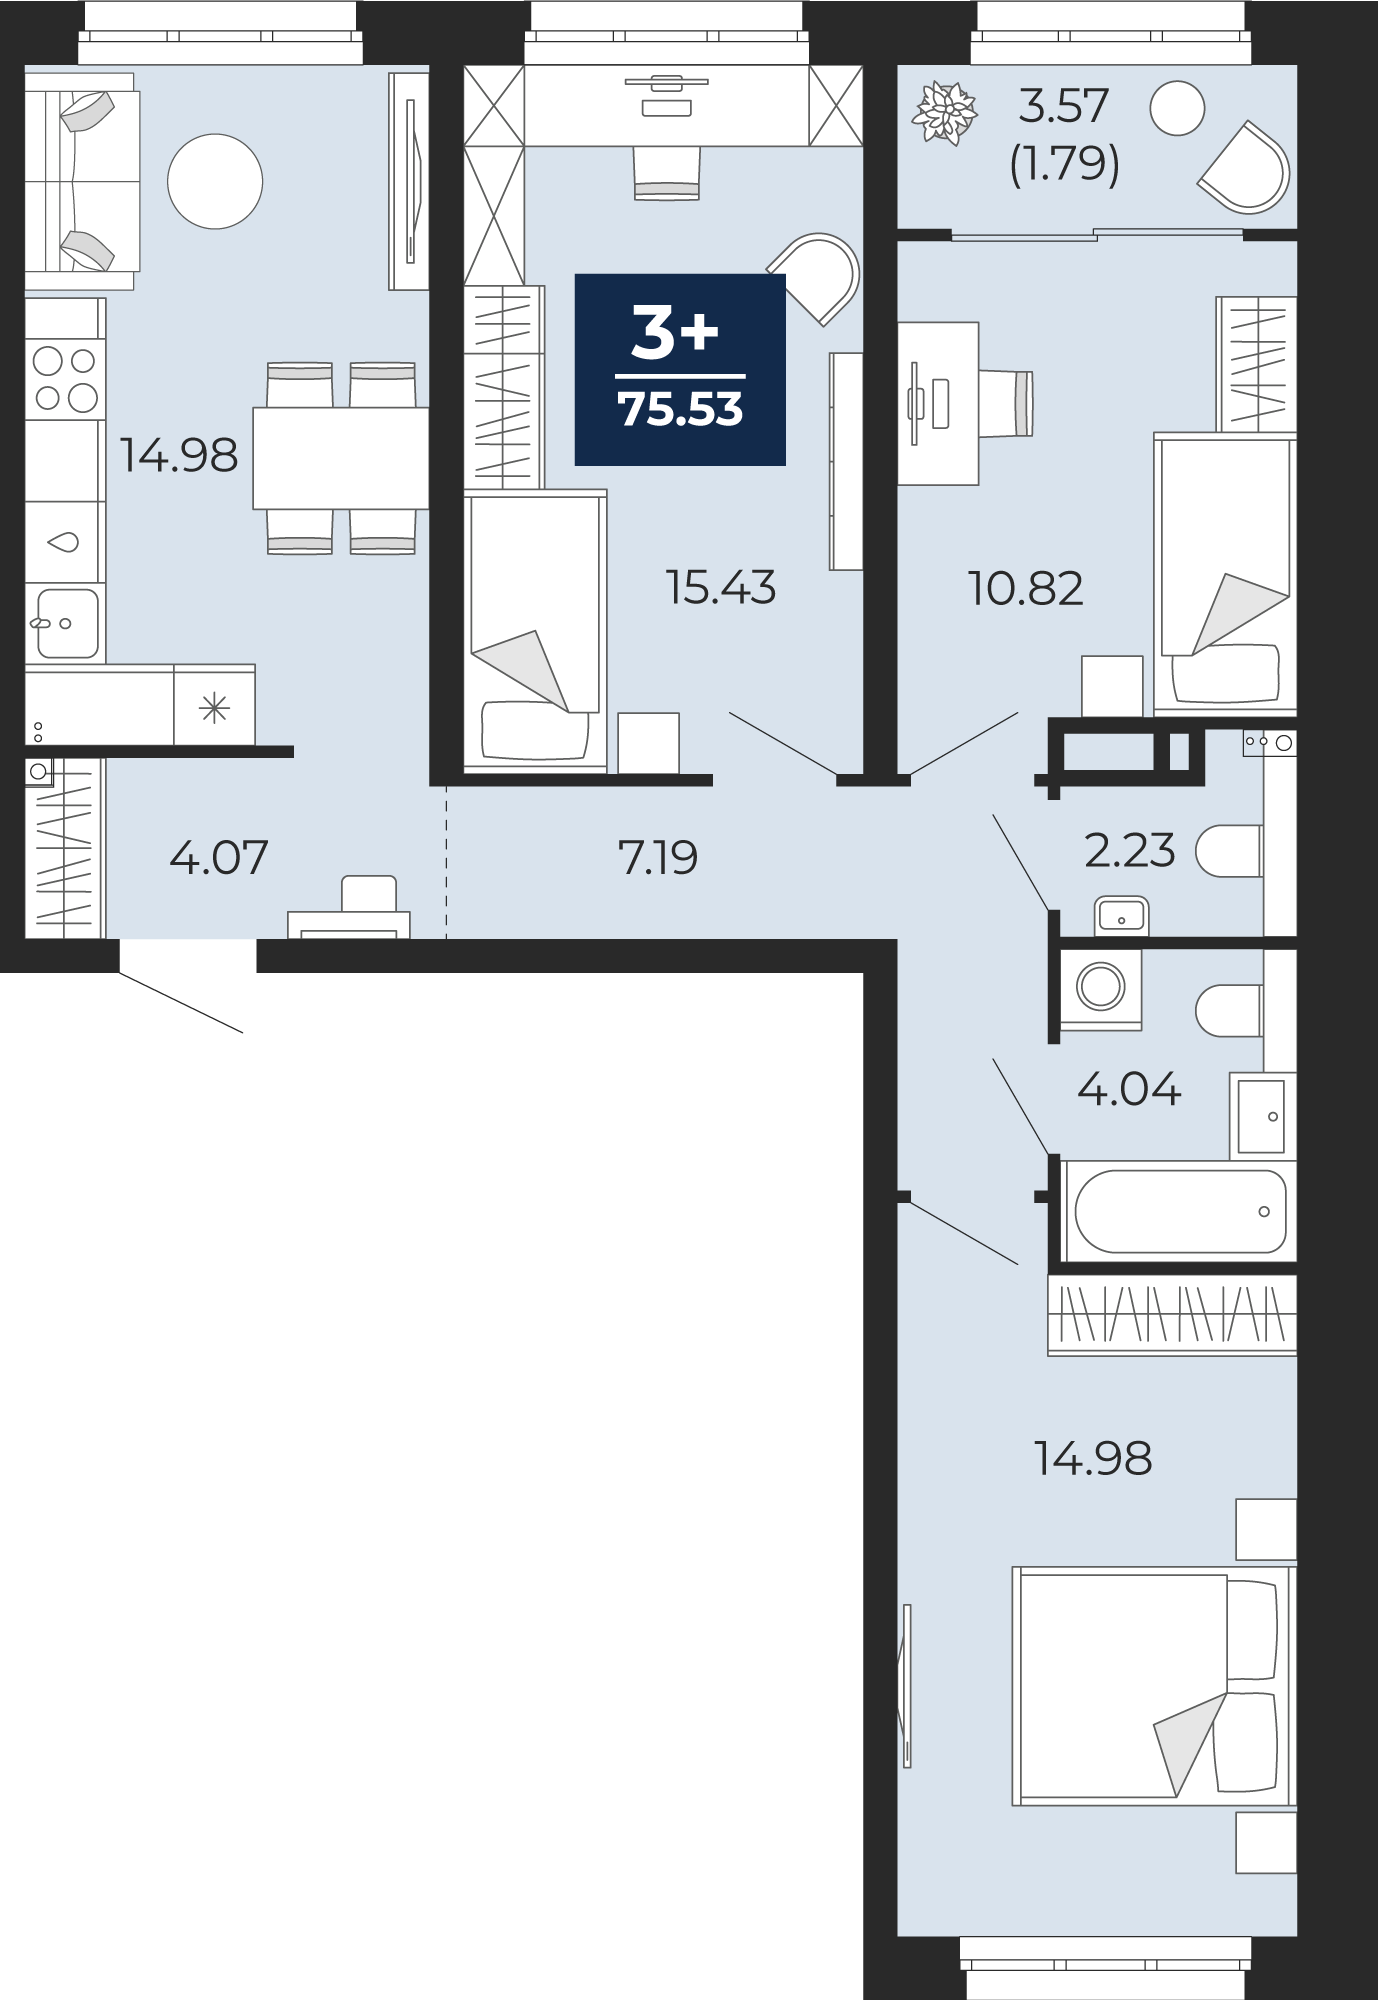 Квартира № 13, 3-комнатная, 75.53 кв. м, 4 этаж